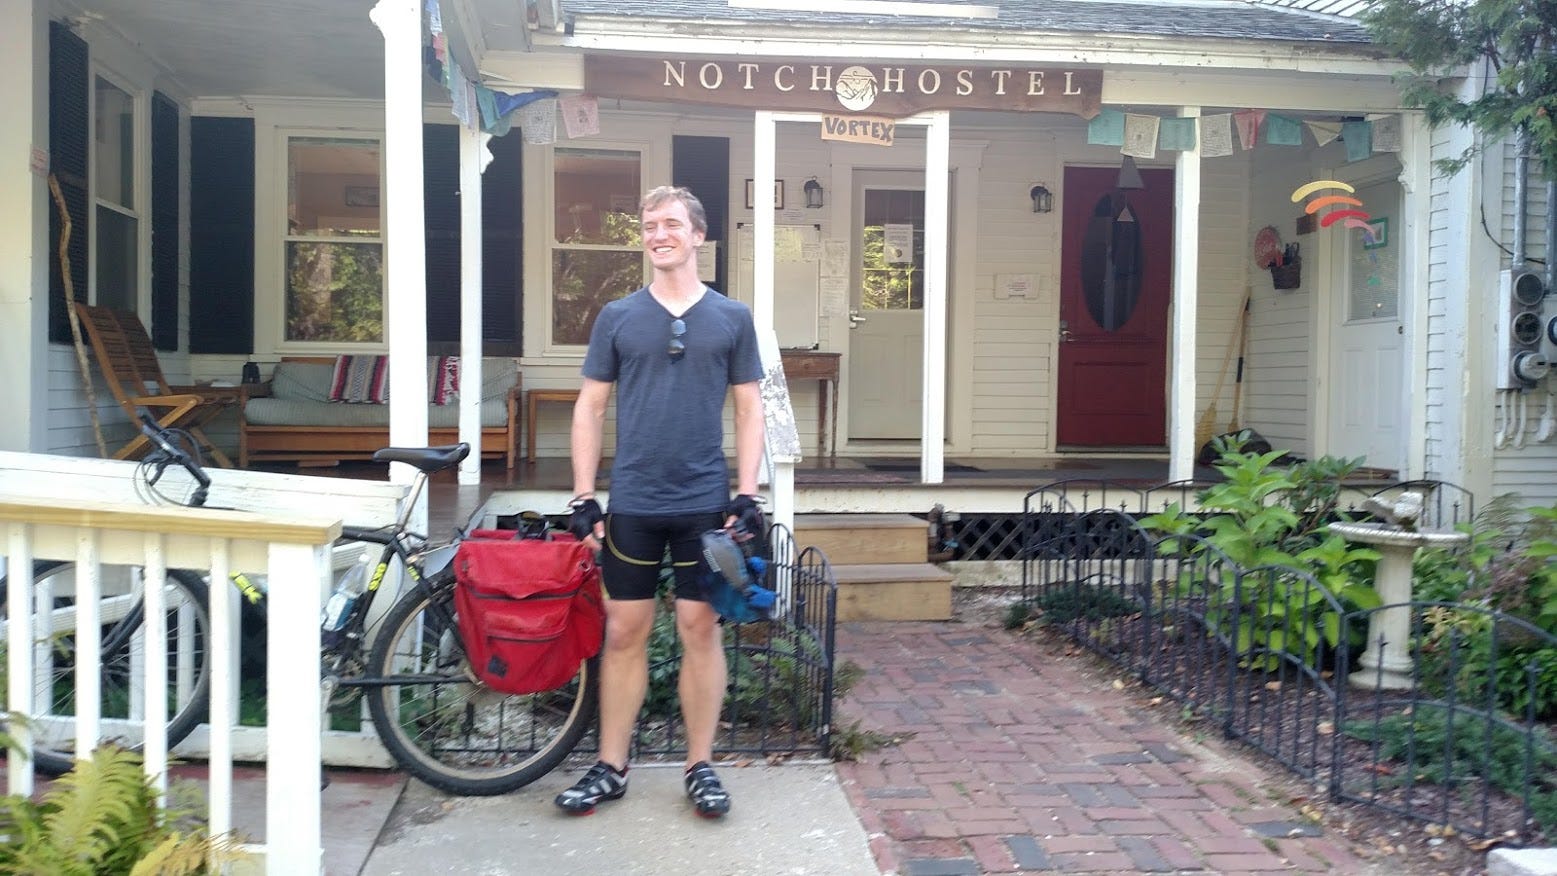 Notch Hostel, White Mountains Bicycle Tour